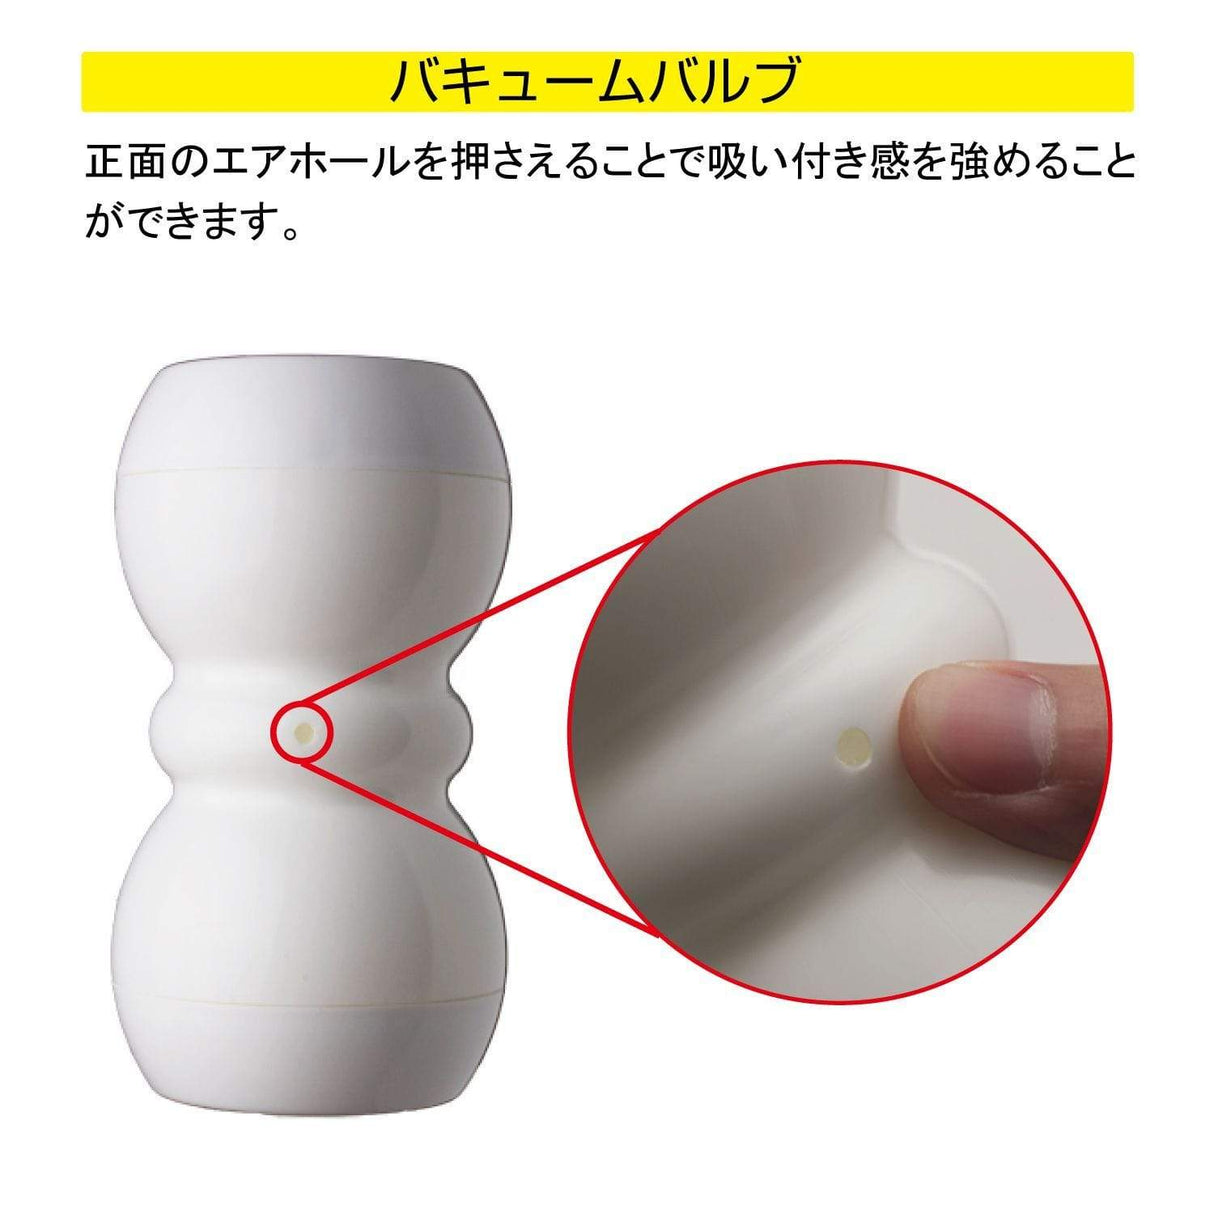 Men's Max - Smart Double Hole Onahole Cup Masturbator (White)    Masturbator Resusable Cup (Non Vibration)